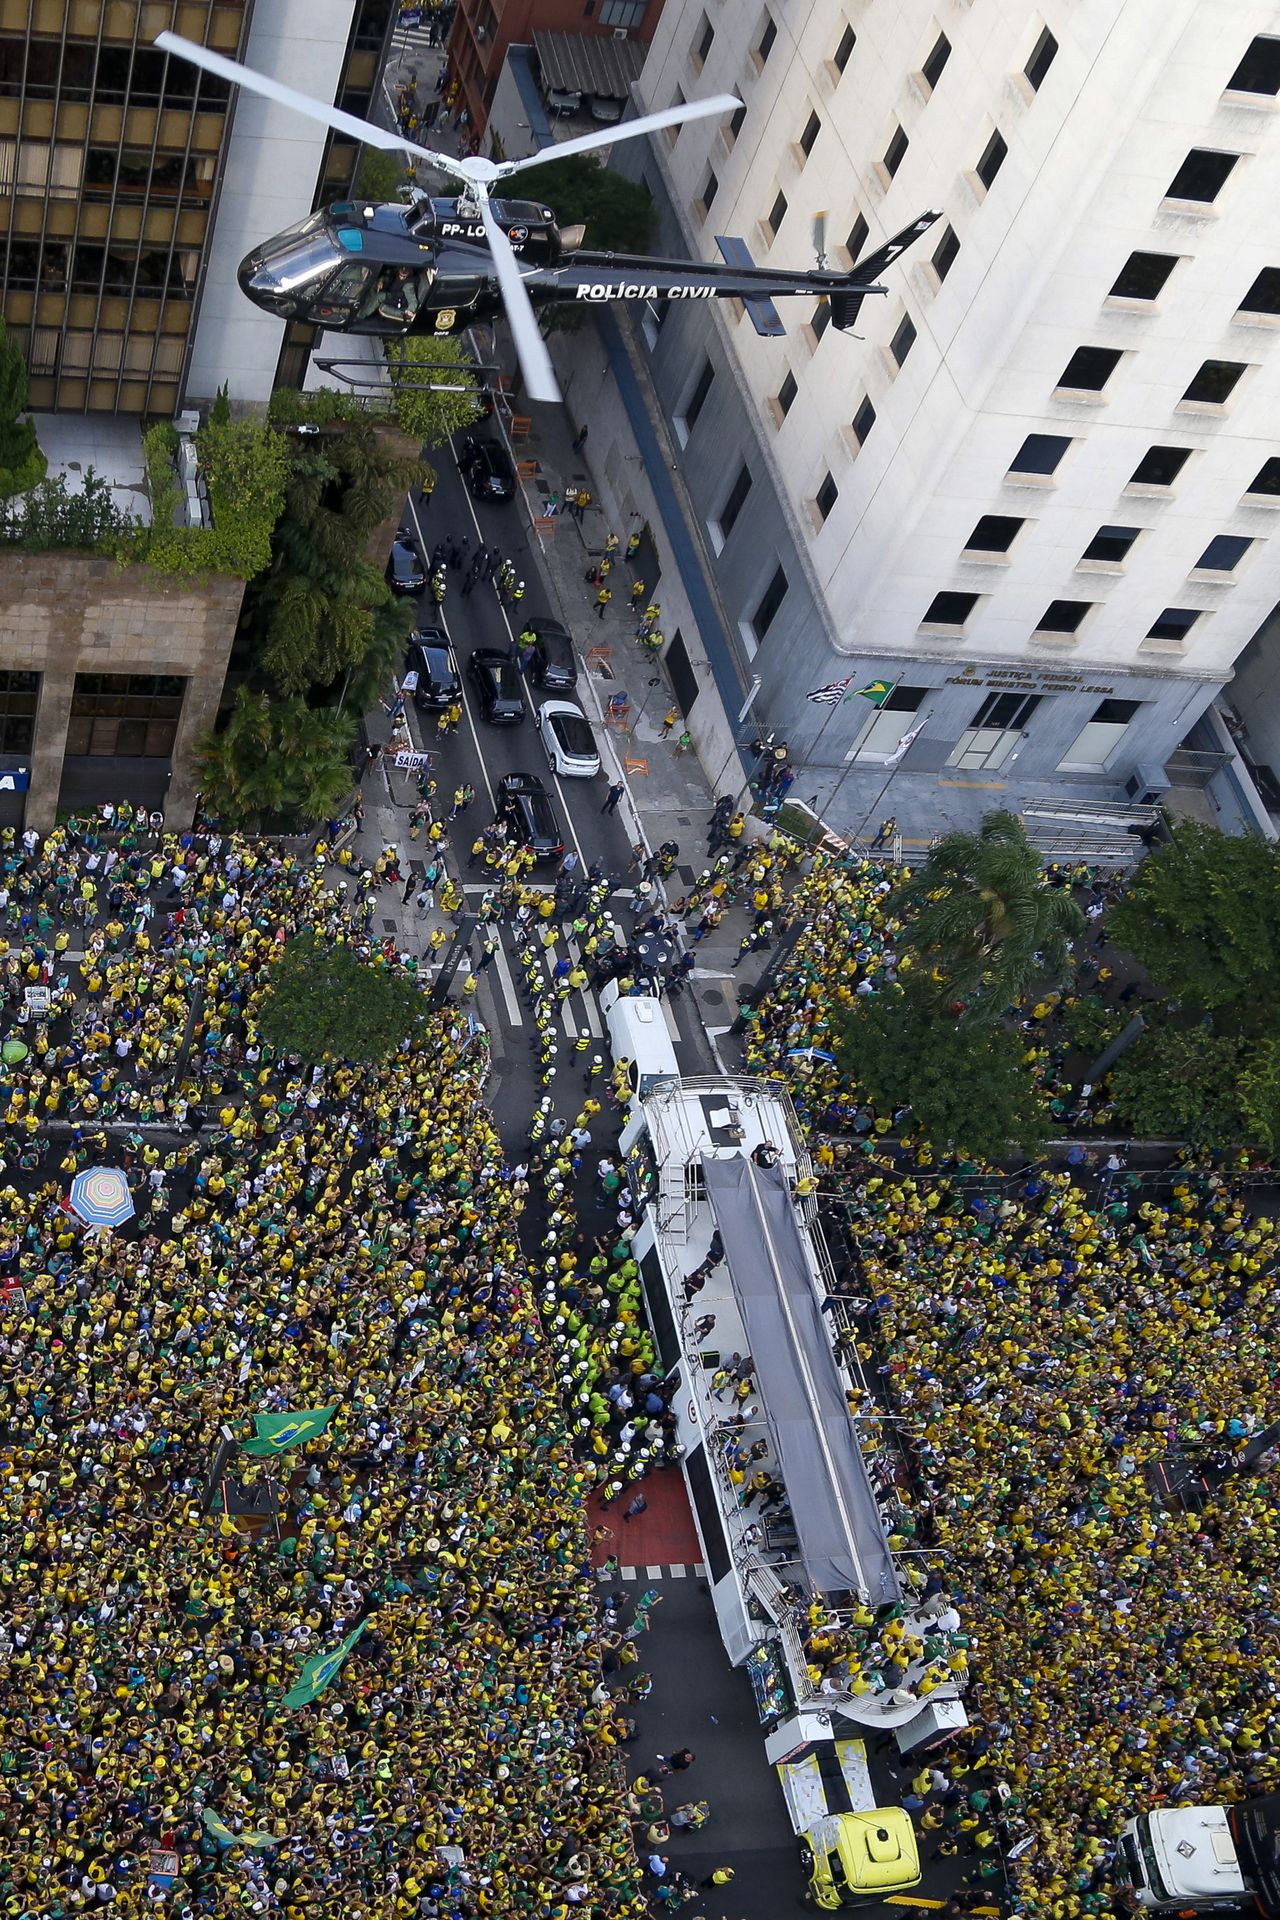 Protestas en Brasil hoy: estas son las imágenes de las calles llenas en apoyo a Bolsonaro contra Lula tras acusaciones judiciales de “golpismo”